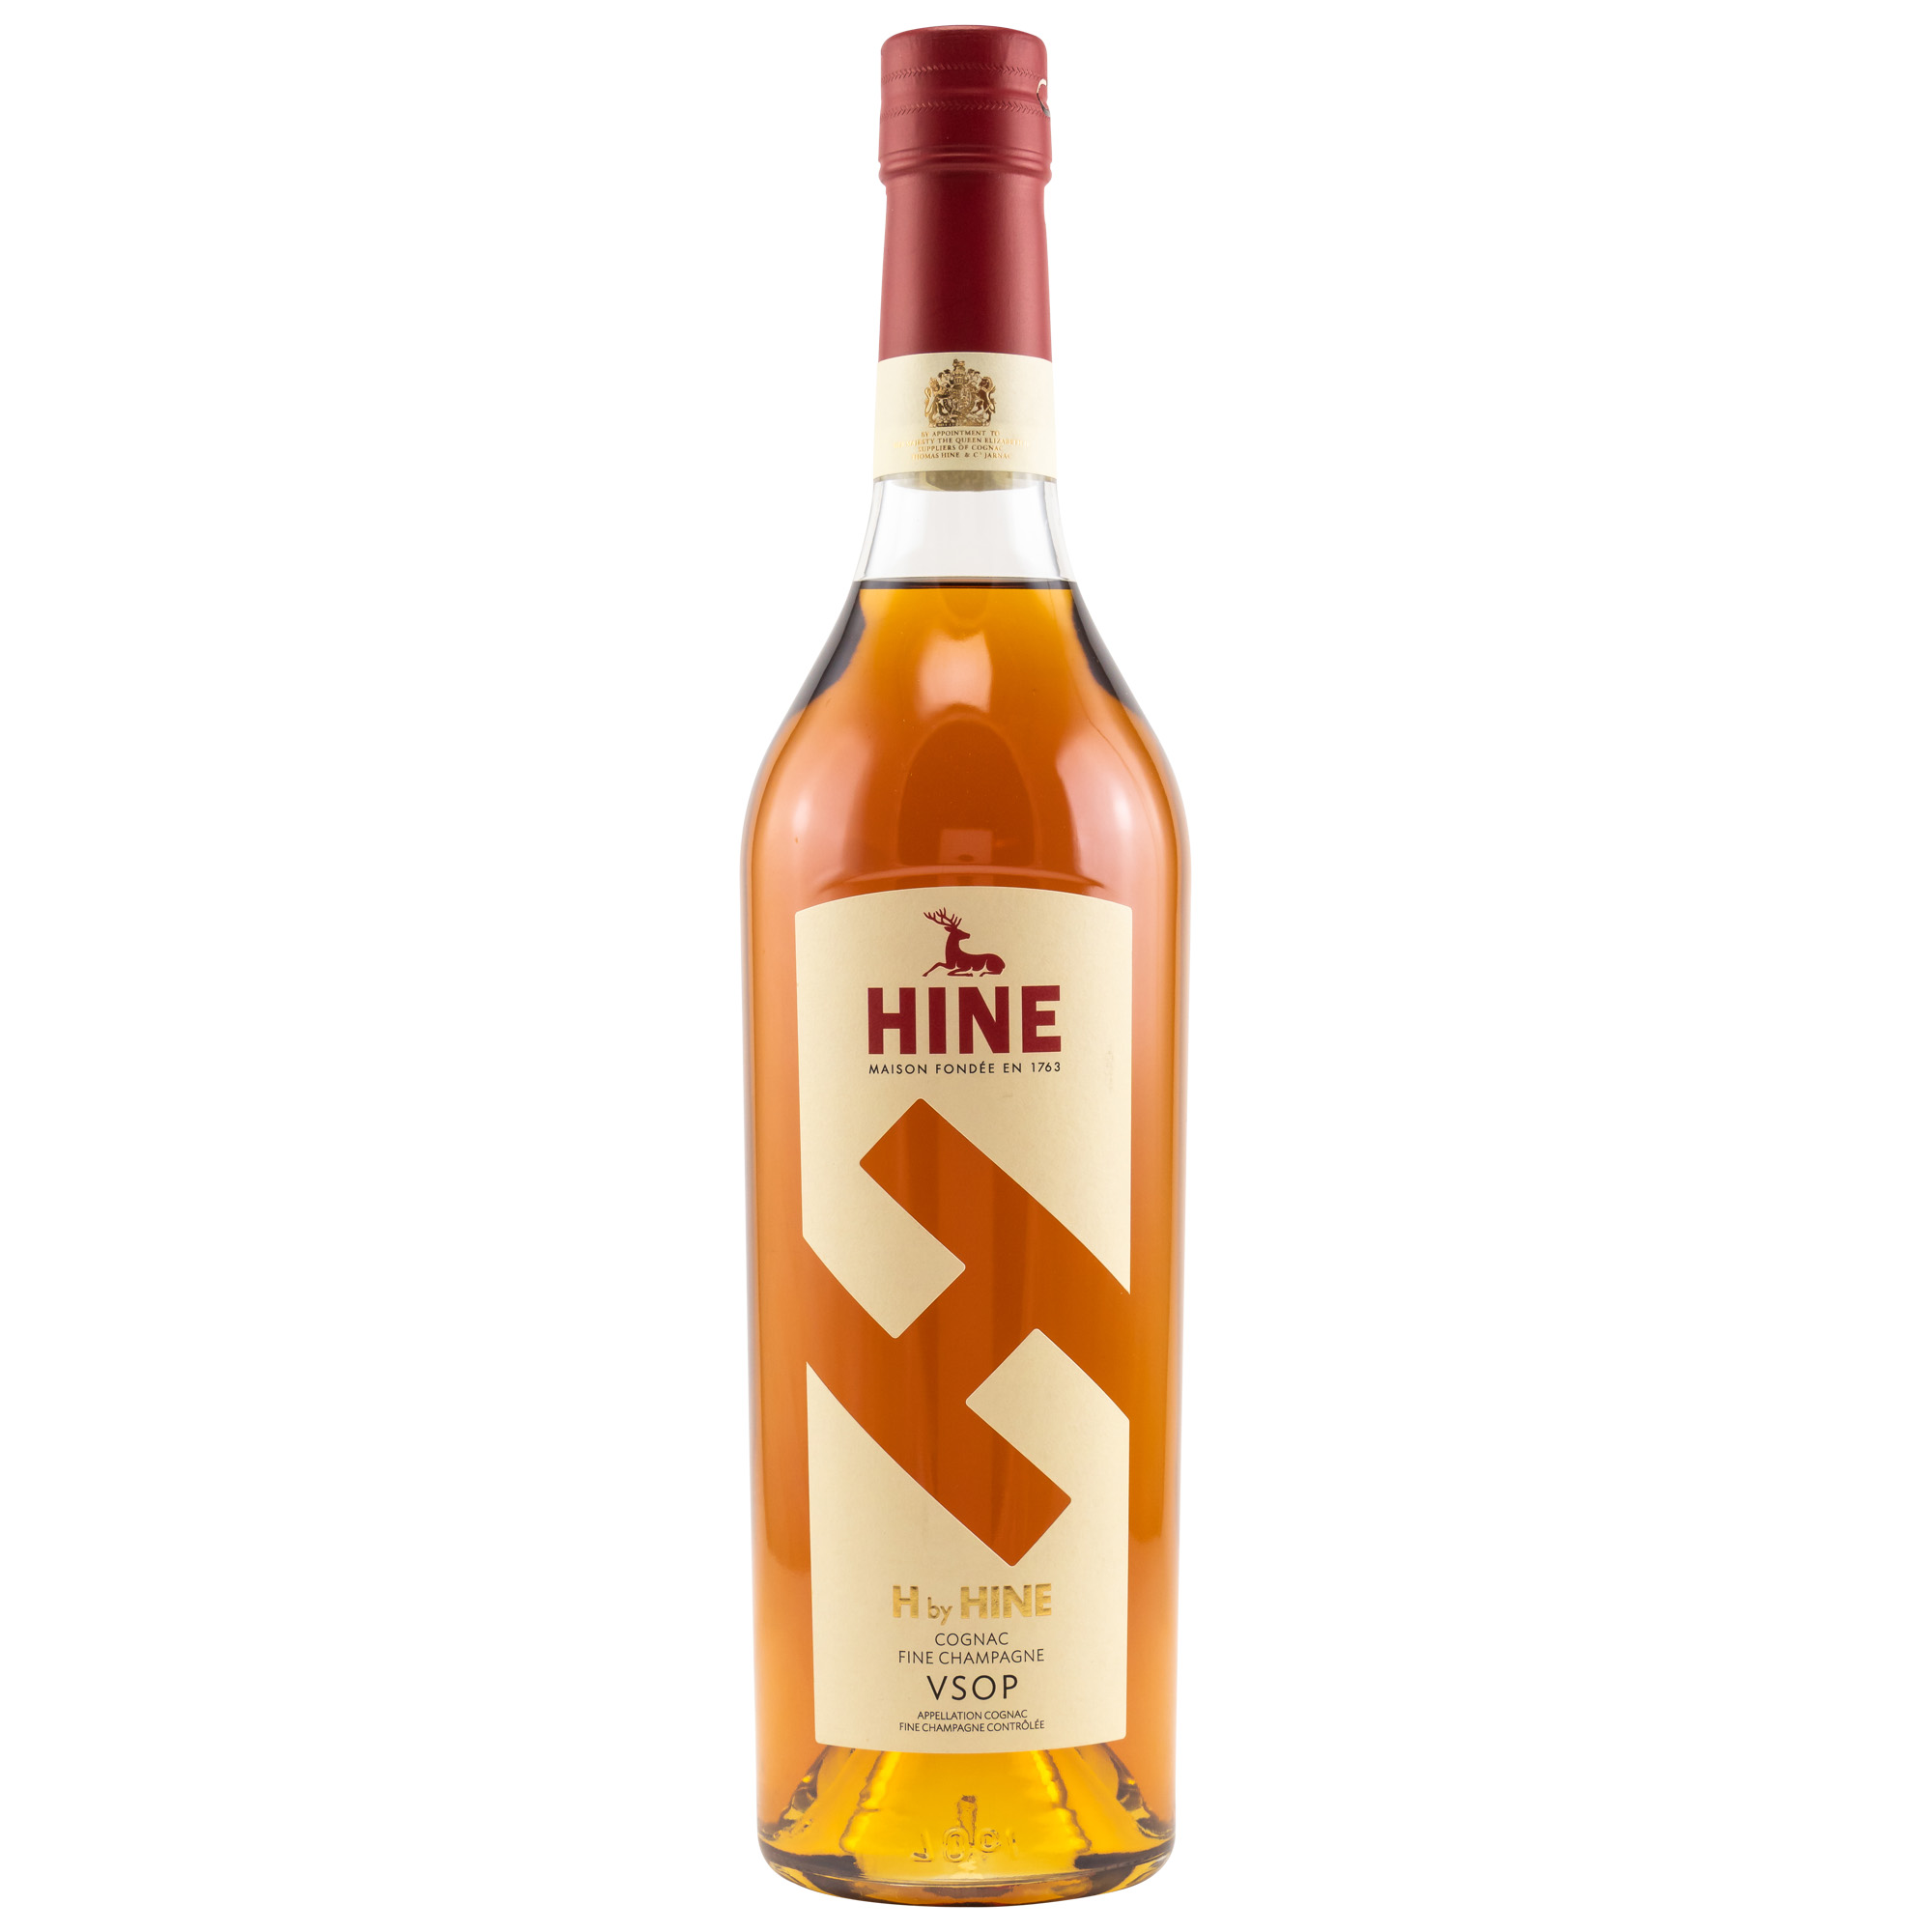 Hine - H by Hine Cognac VSOP